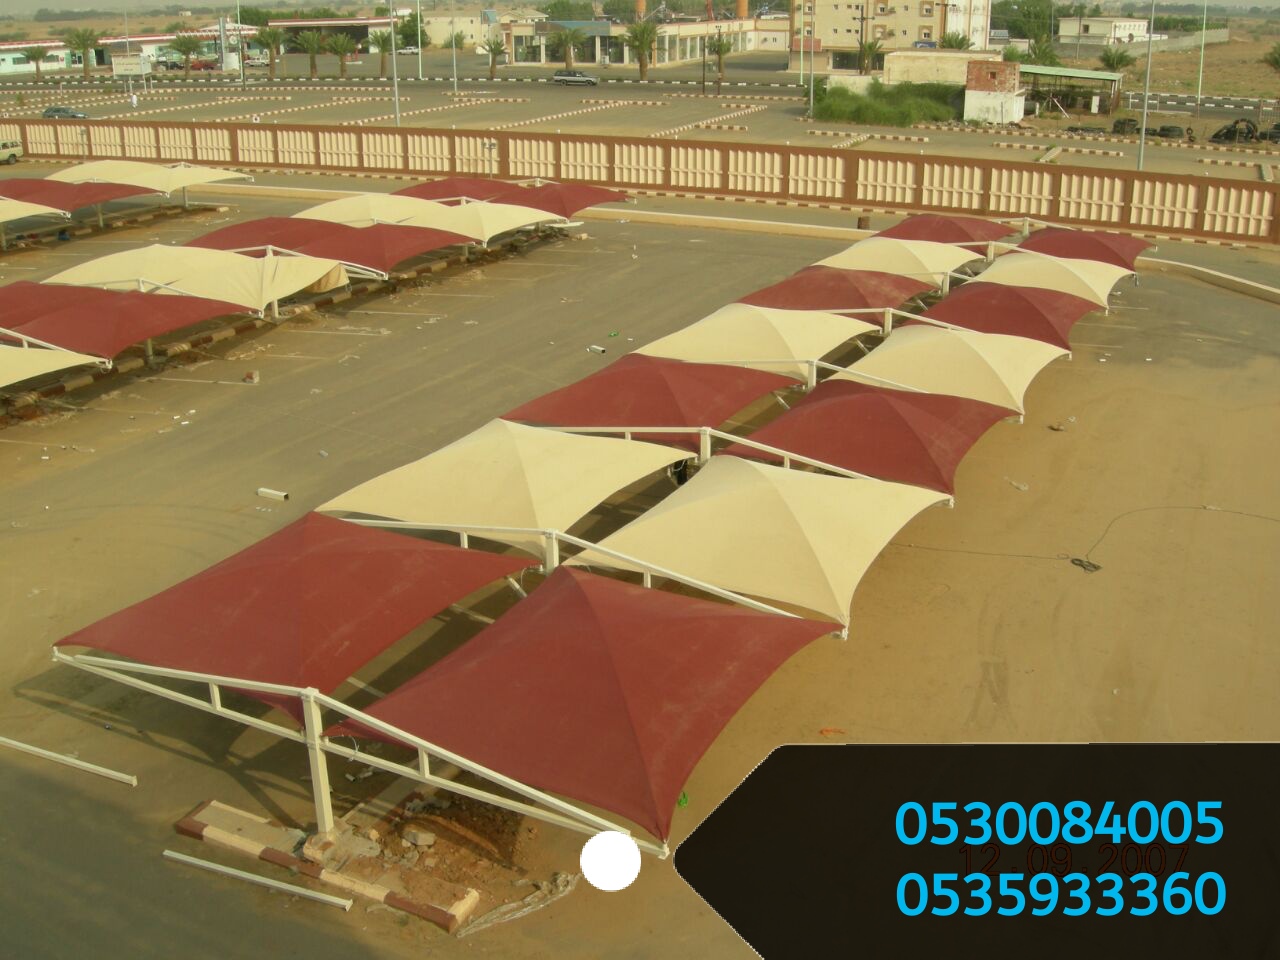 مؤسسة رواق المستقبل لبيع الحواجز الخرسانية والمصدات في الرياض 0530084005  P_1502h67xm4